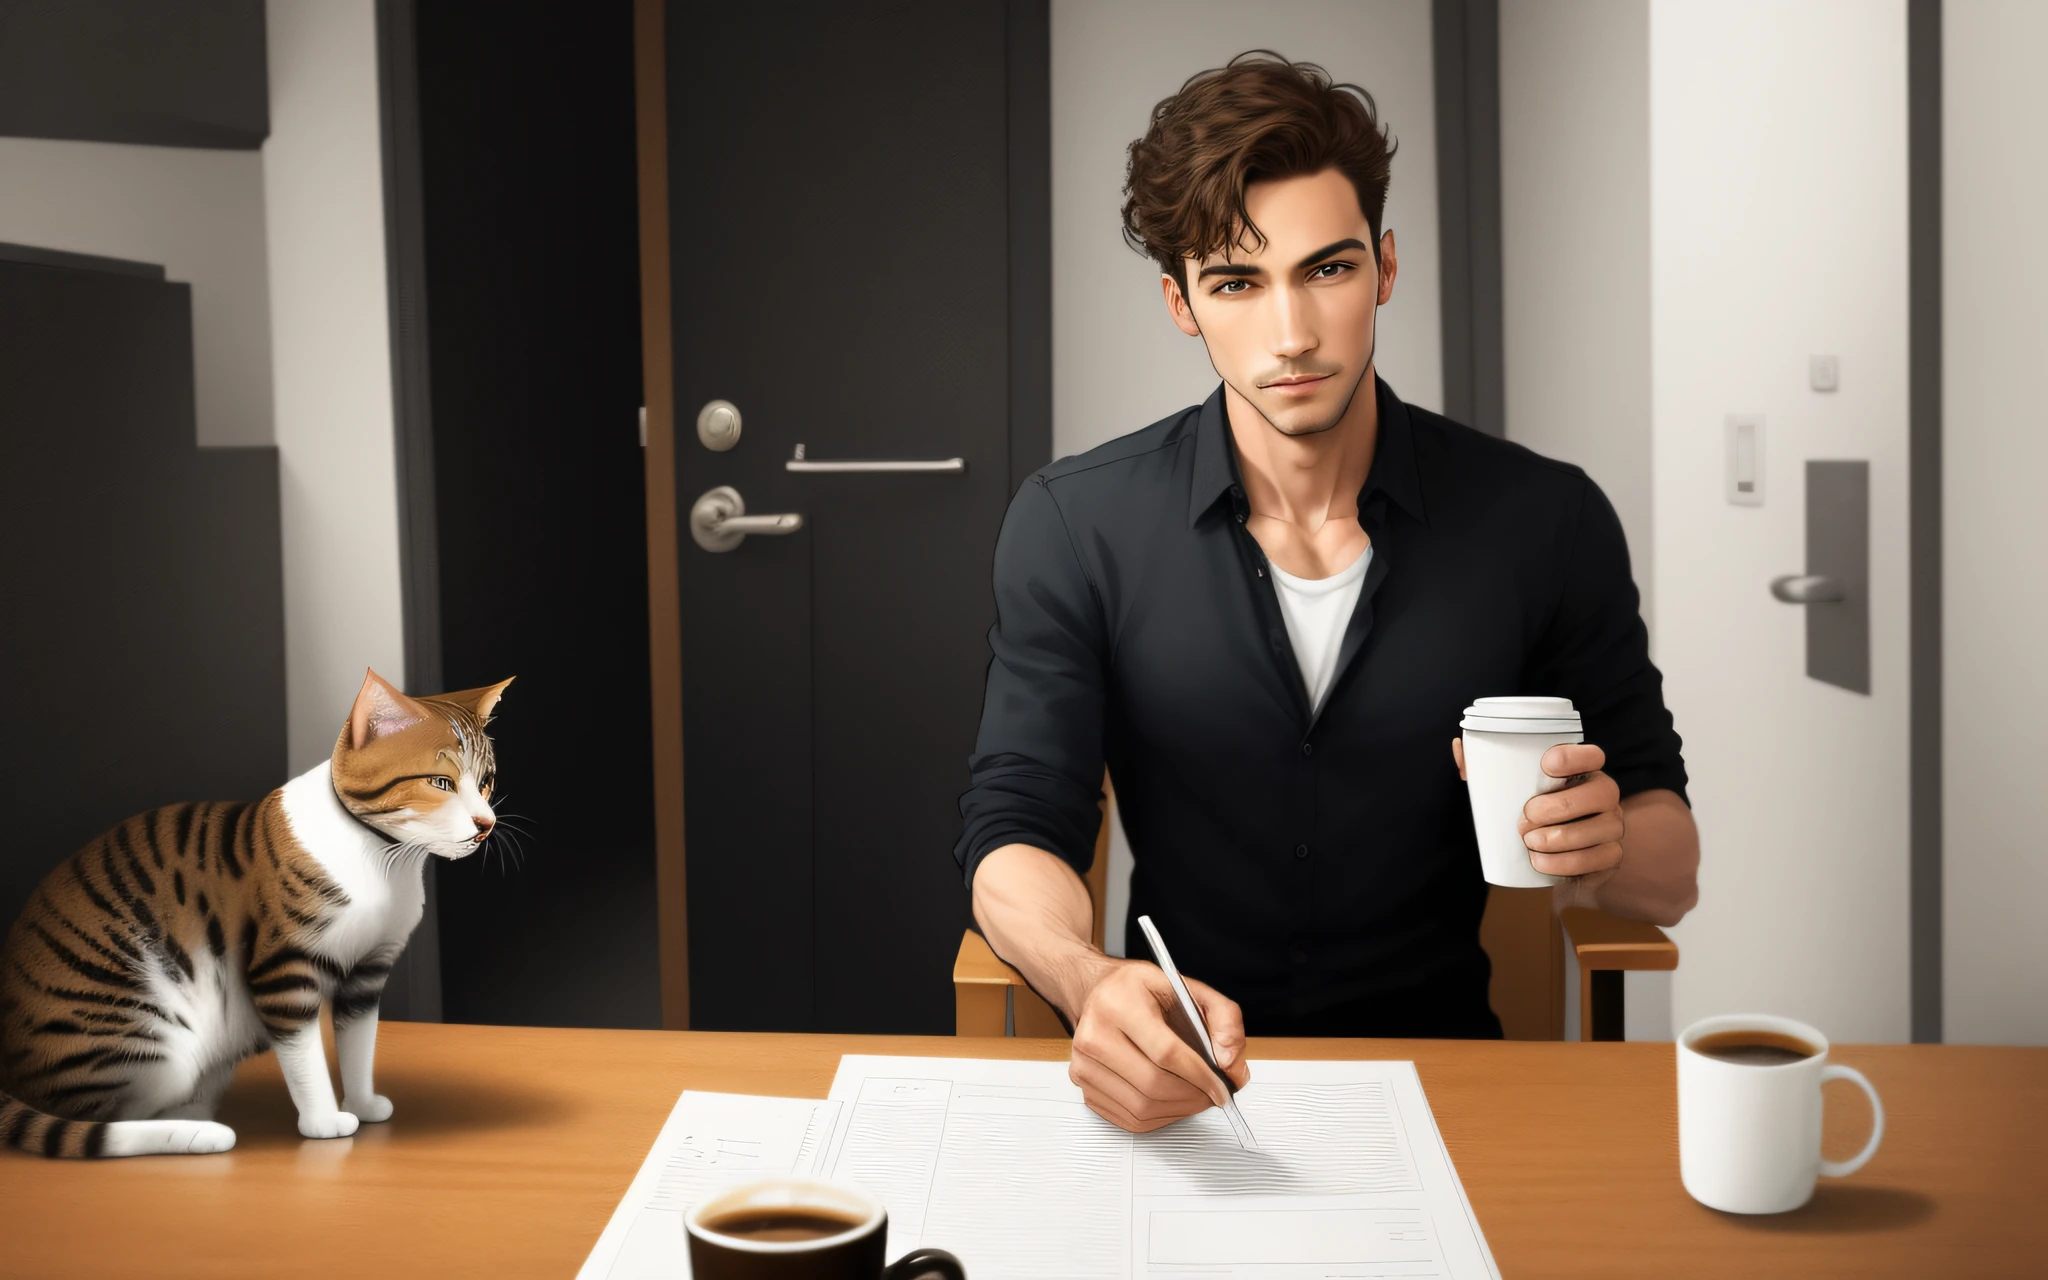 un hombre corpulento que camina erguido,  Sosteniendo una taza de café, Un gato siguiendo la misma dirección que el hombre., estilo de dibujos animados,  Un solo hombre. Imagen real realista detallada.